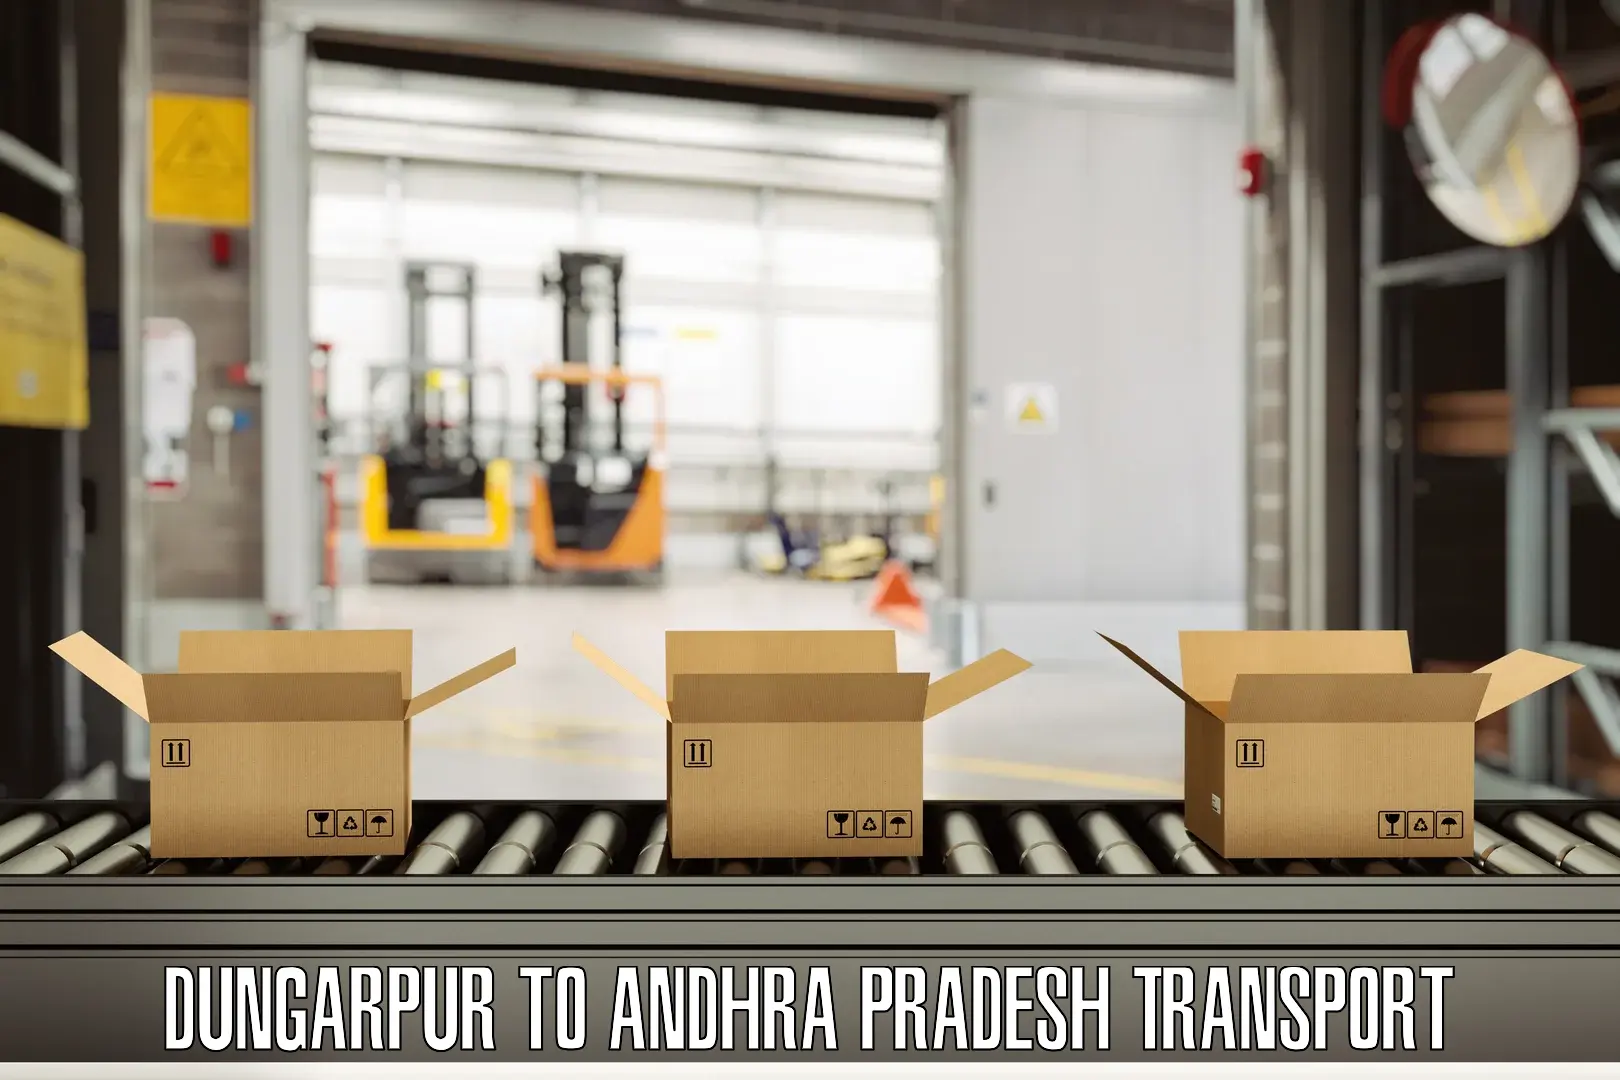 Container transport service Dungarpur to Gudivada